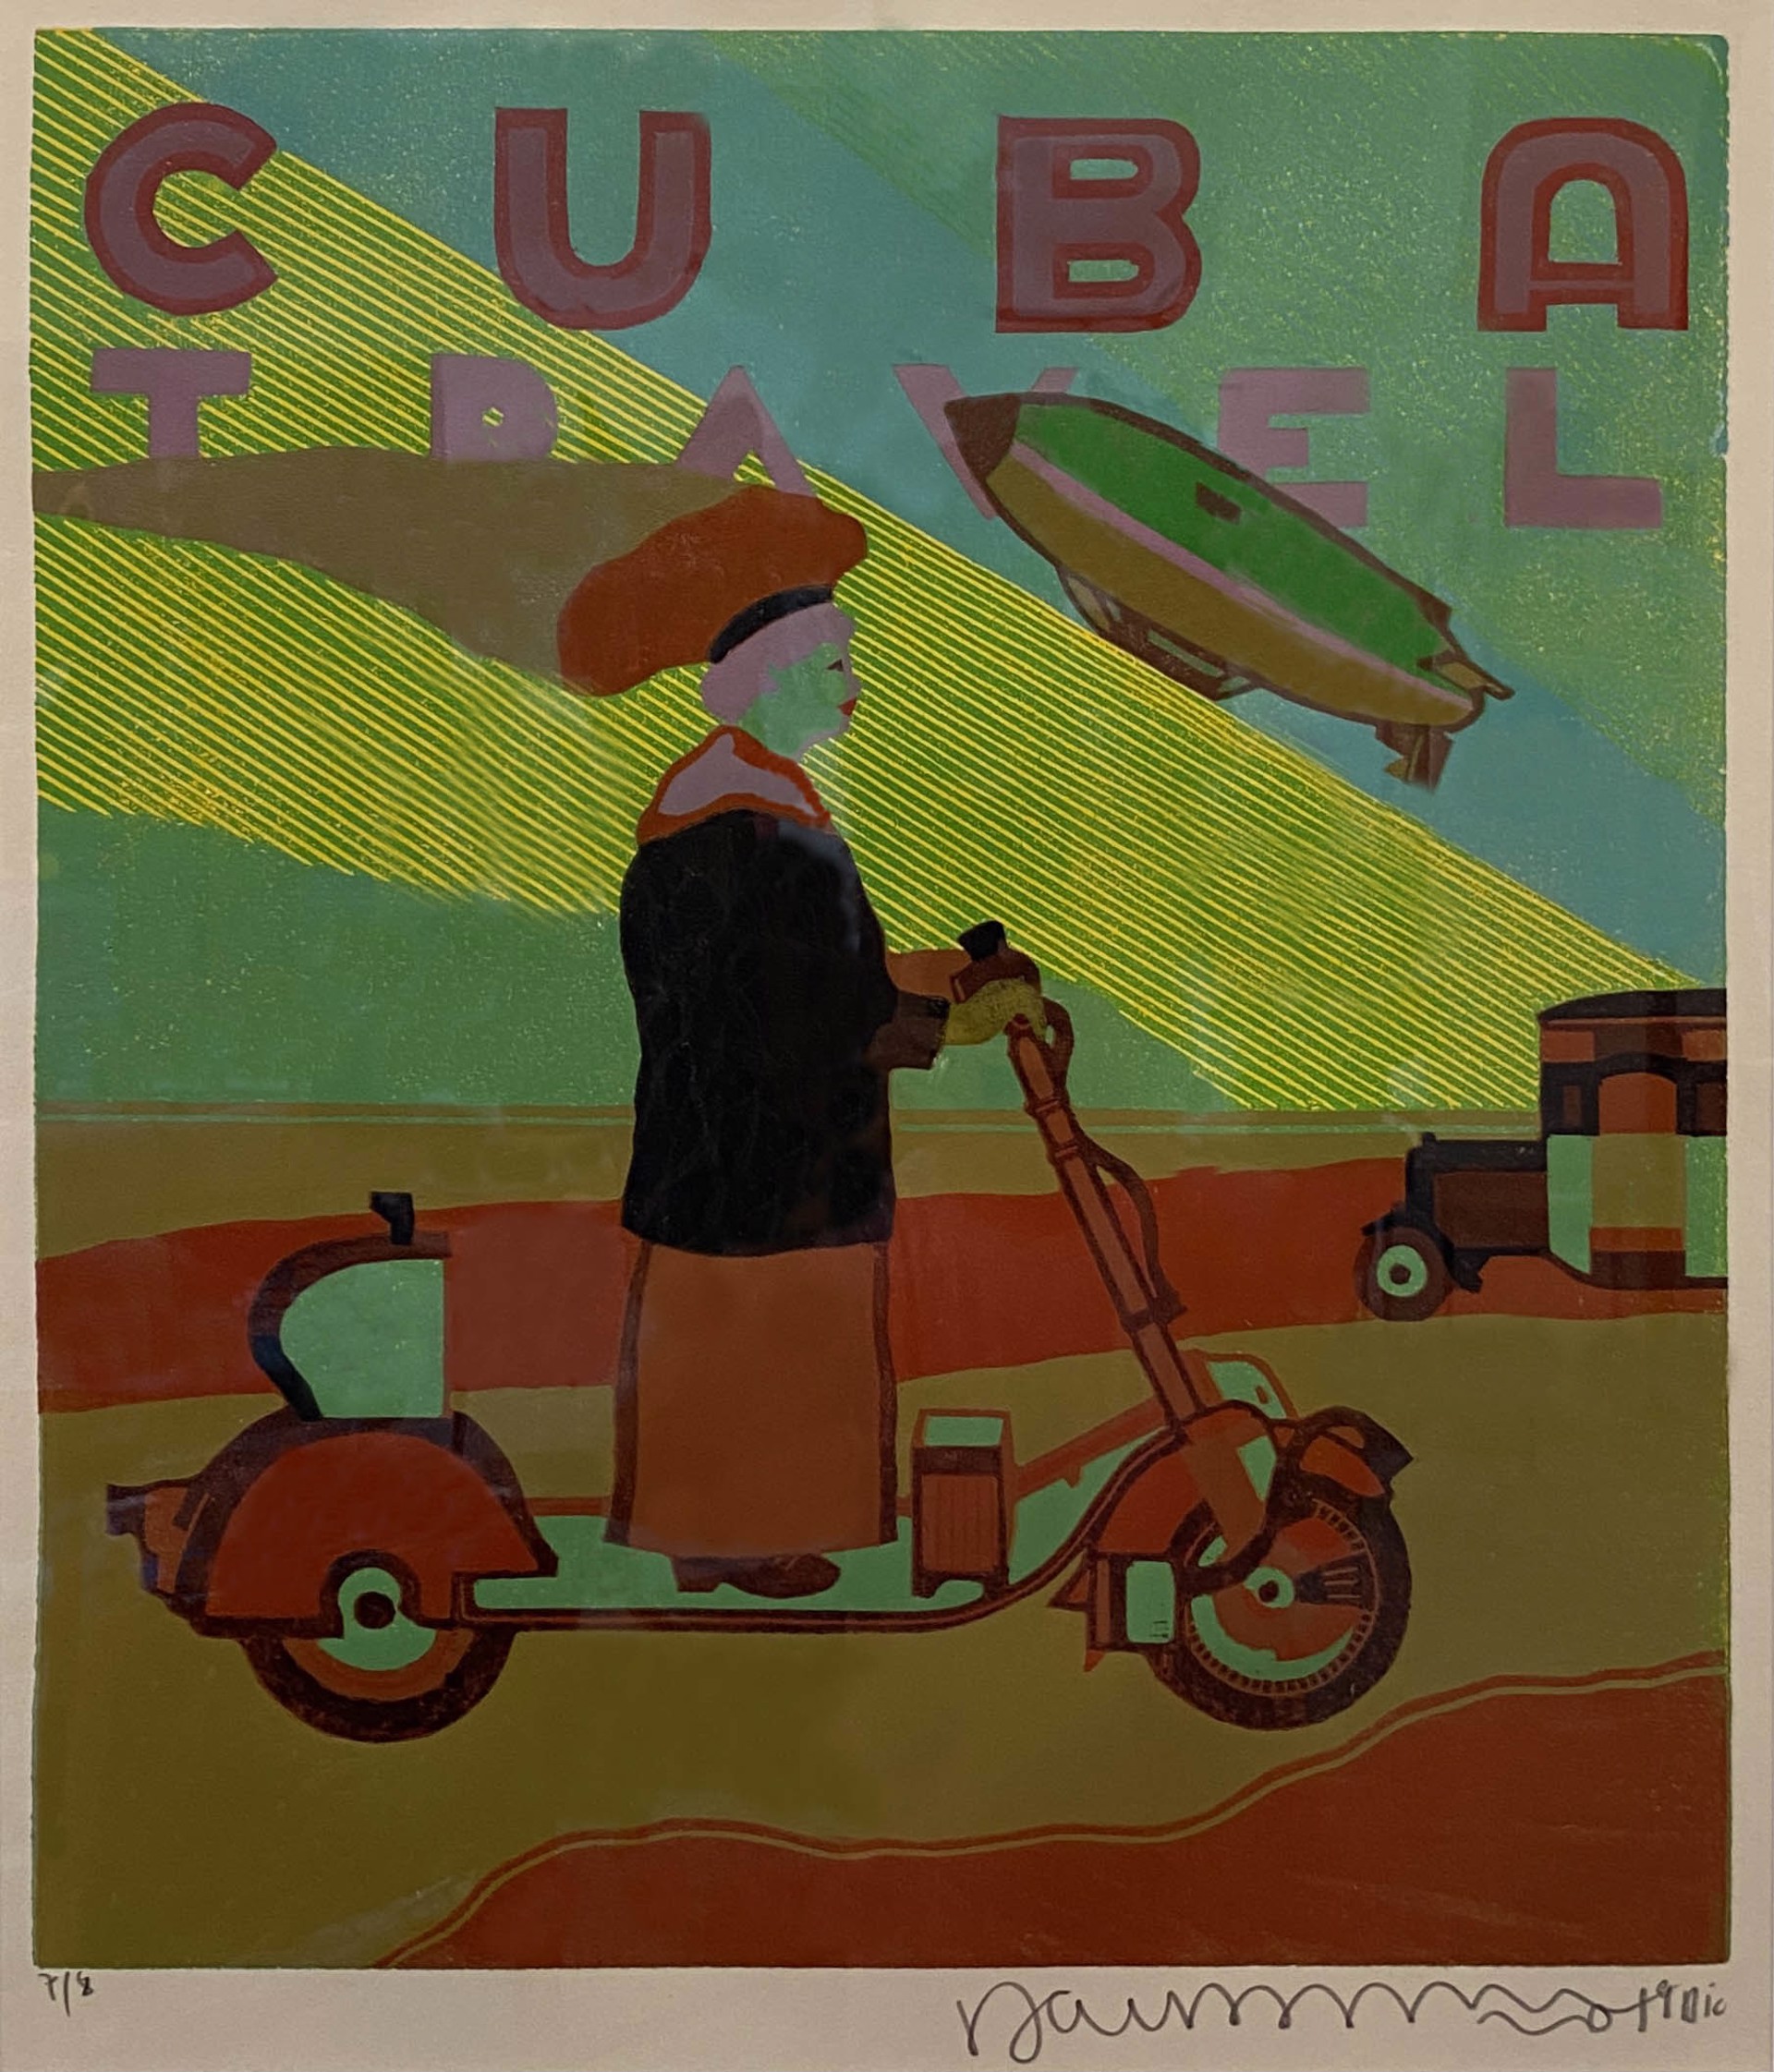 Cuba Travel by Dairan Fernández de la Fuente